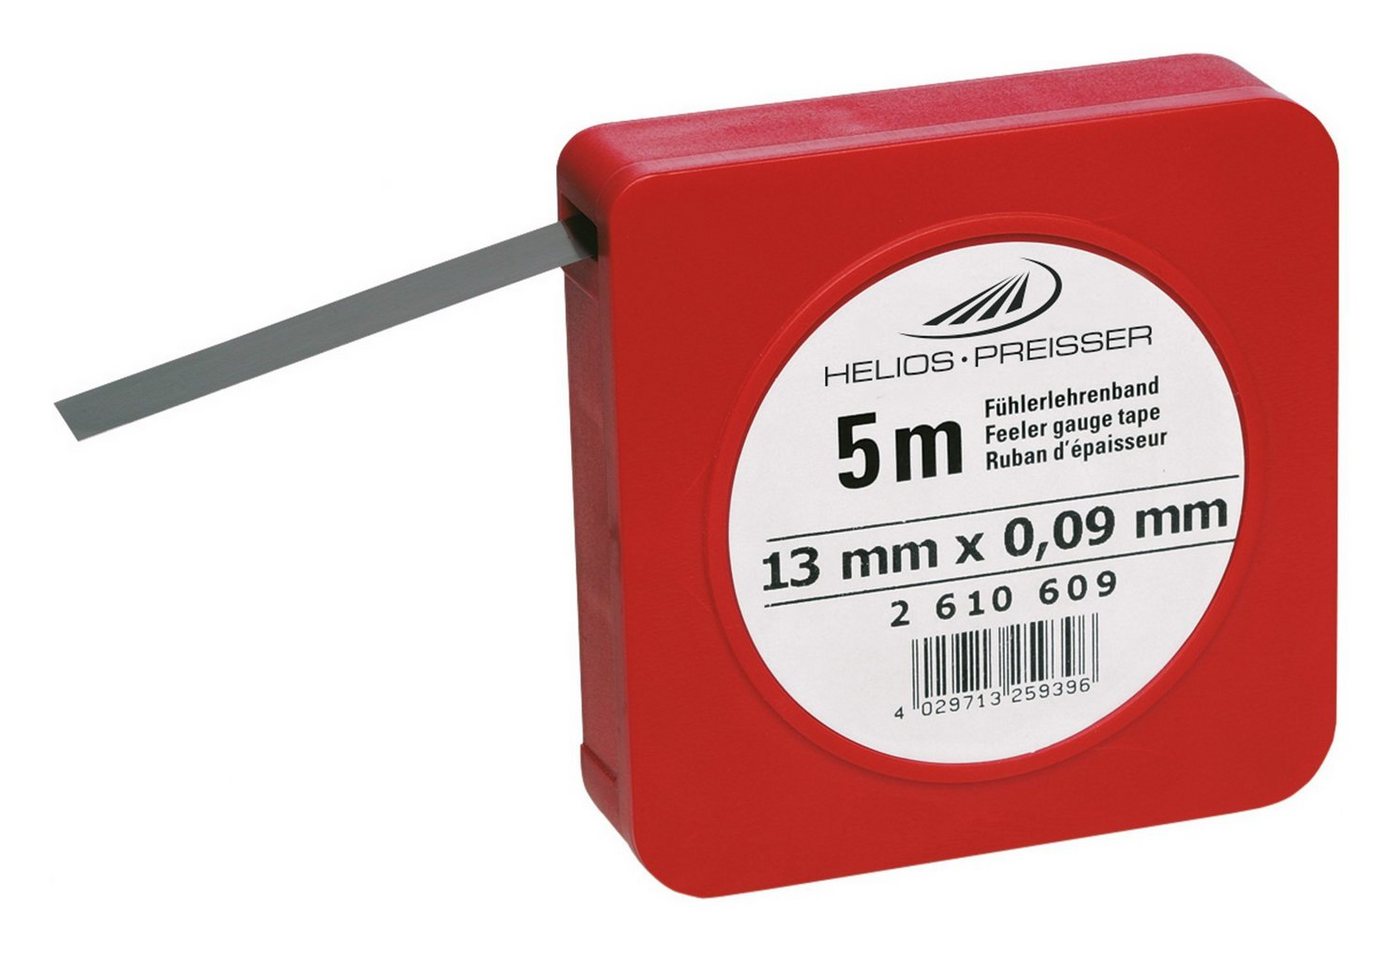 HELIOS PREISSER Fühlerlehre, Fühlerlehrenband 0,15 mm von HELIOS PREISSER